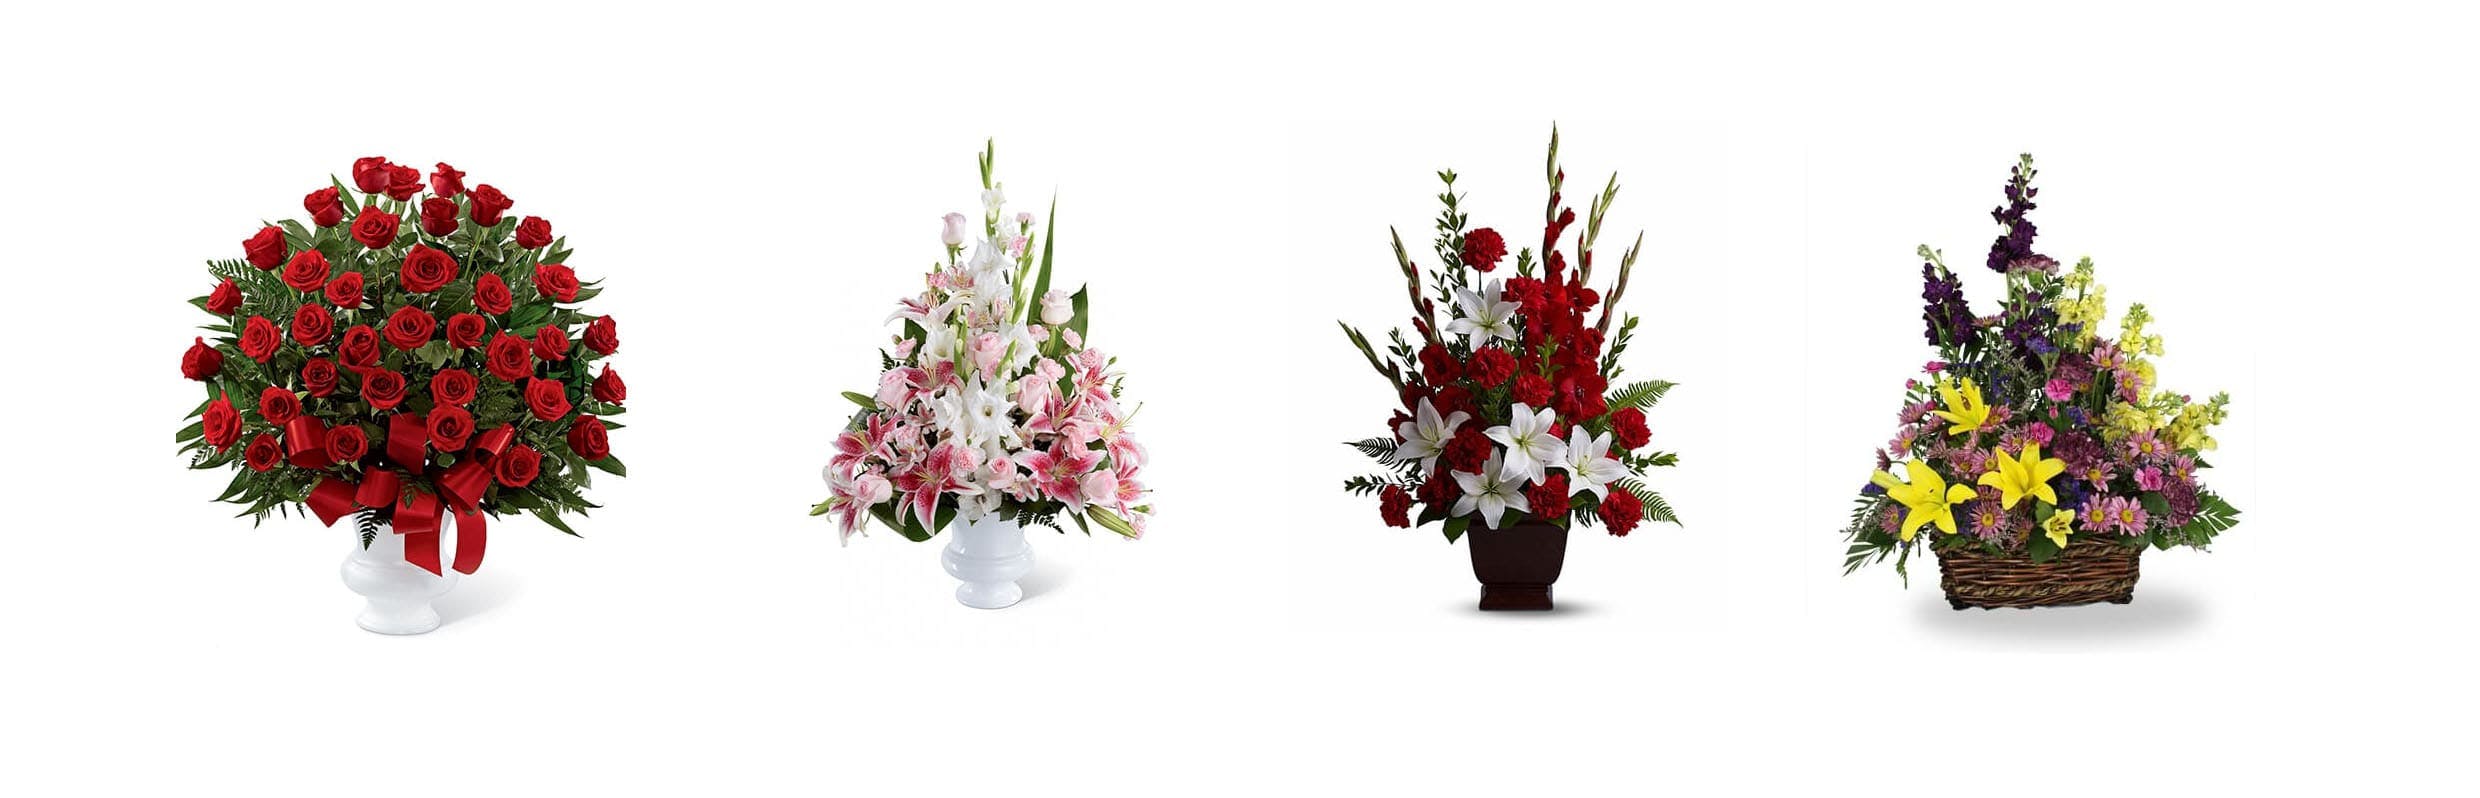 Modèles de fleurs funéraires envoyées par les collaborateurs et les connaissances